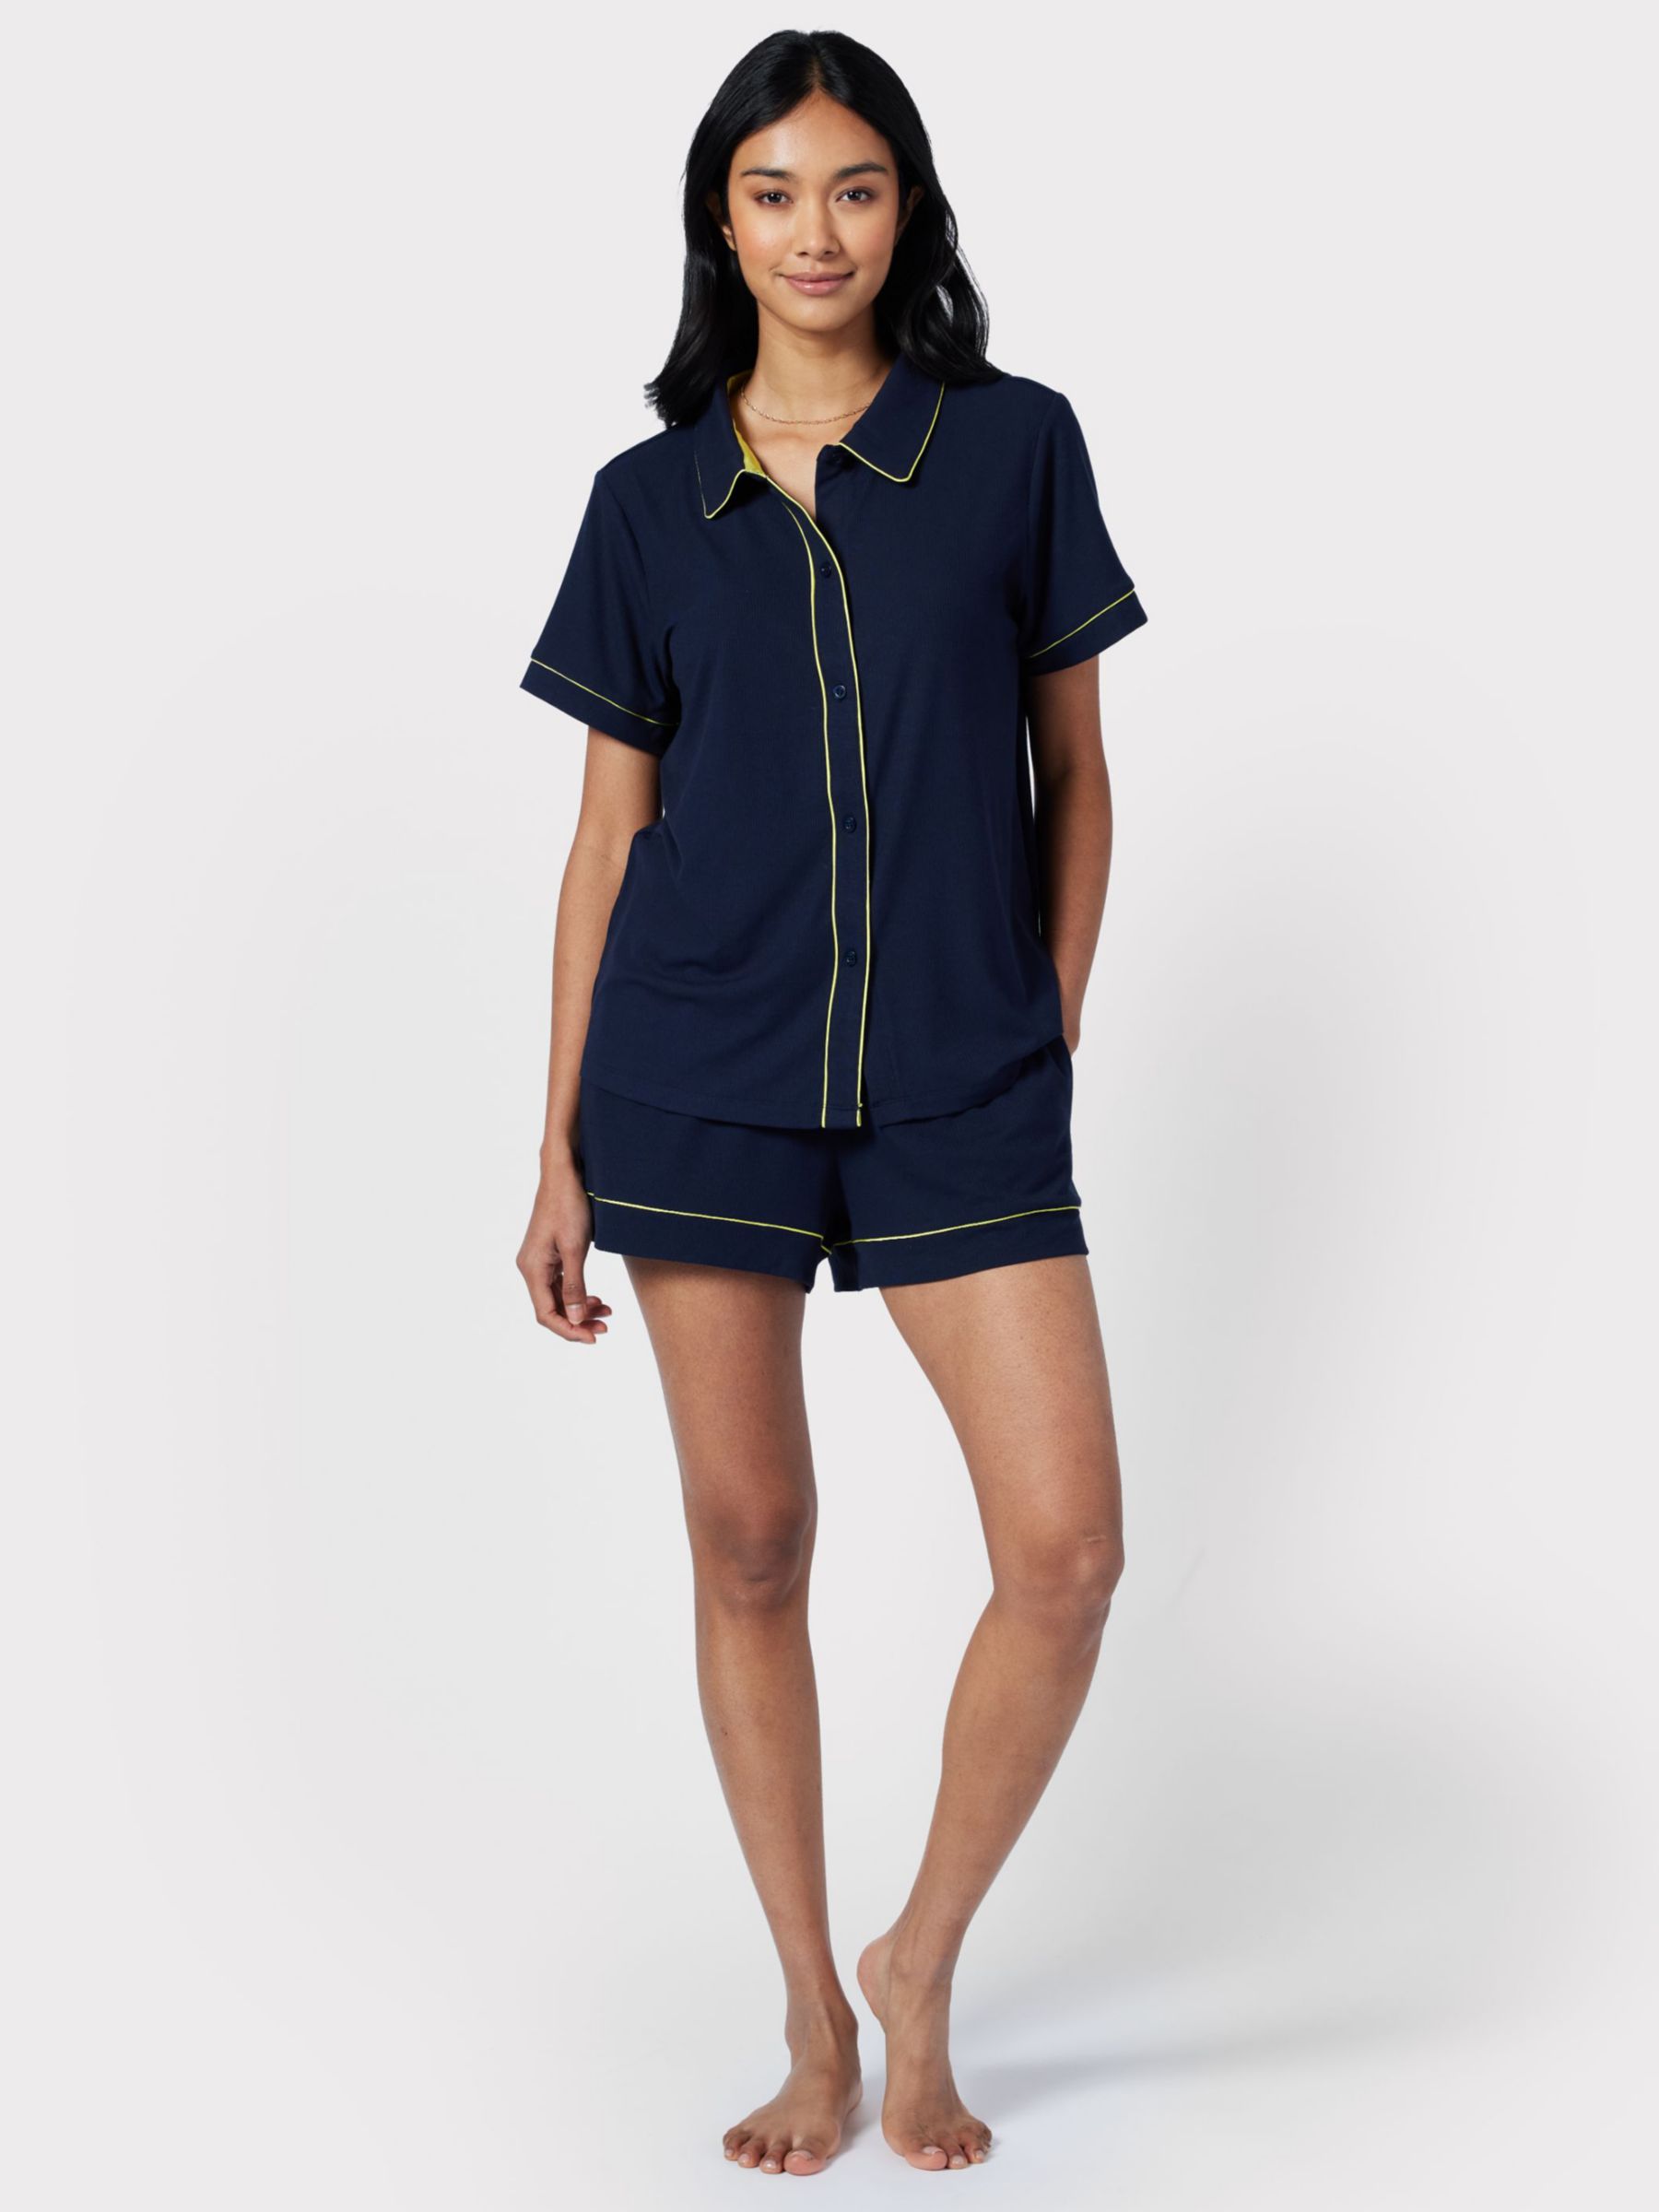 Buy Chelsea Peers Contrast Piping Short Pyjamas, Navy Online at johnlewis.com